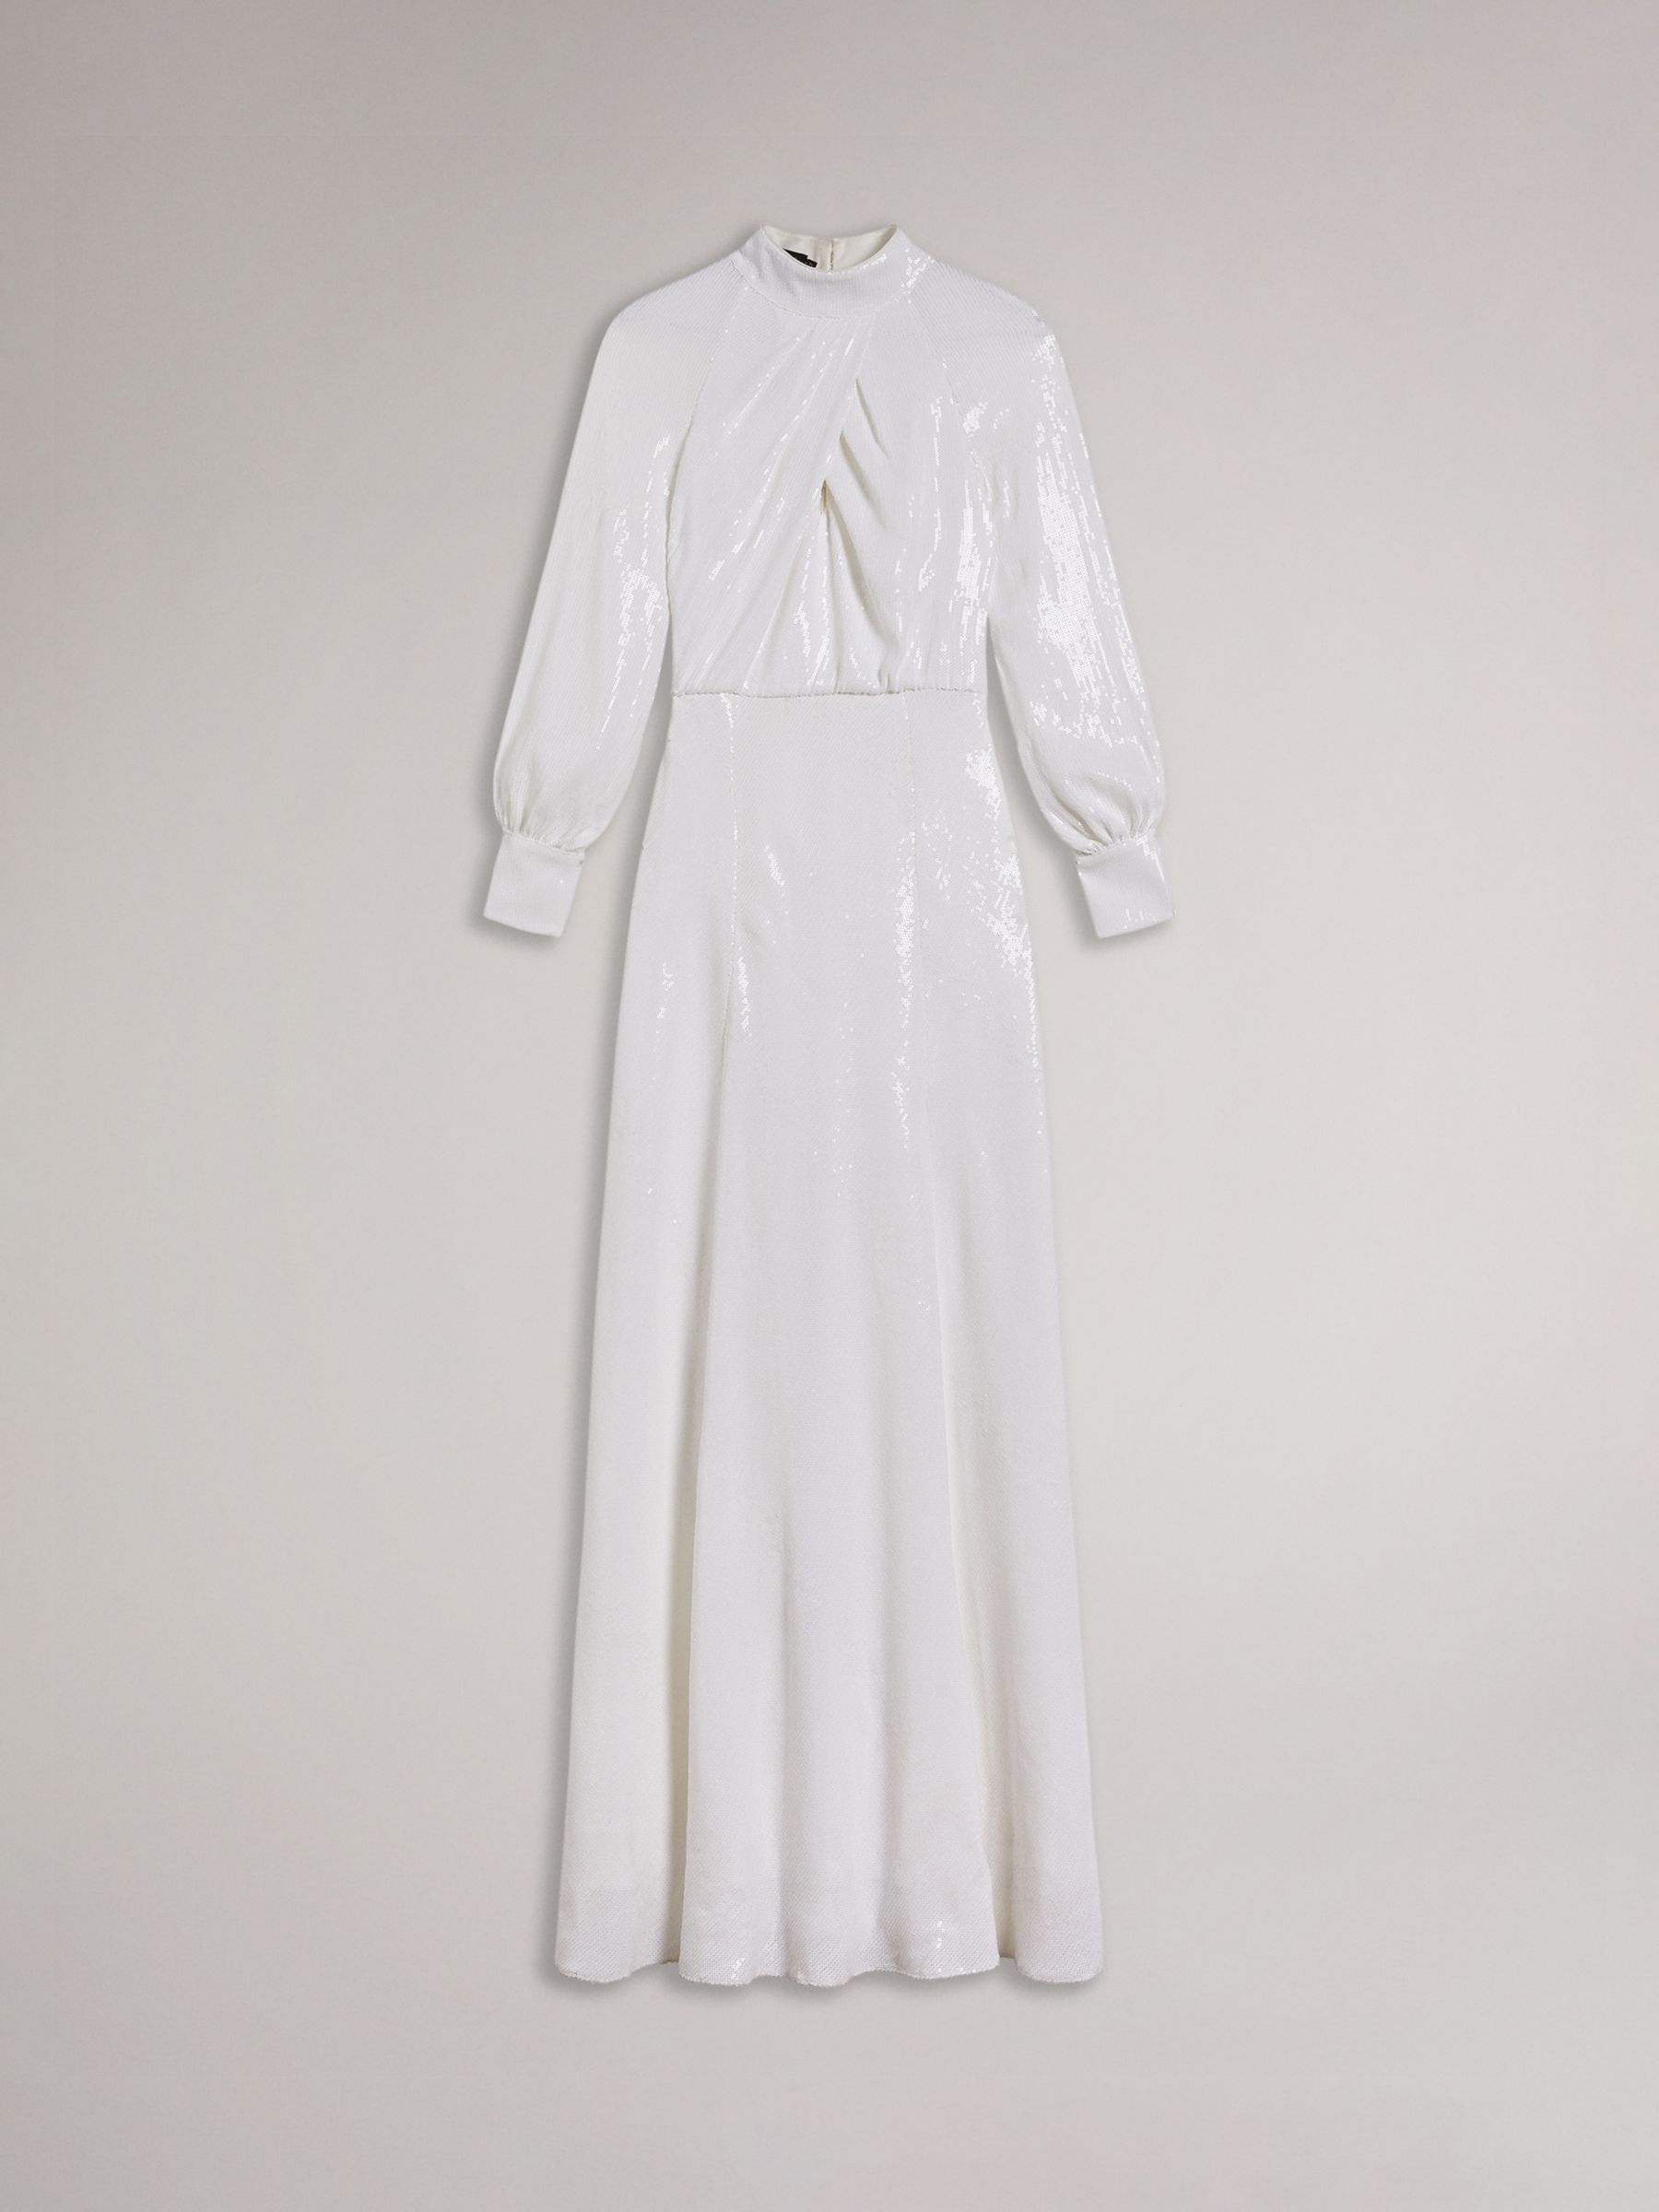 Ted Baker Mayrose Sequin Embellished Maxi Dress, White, 8